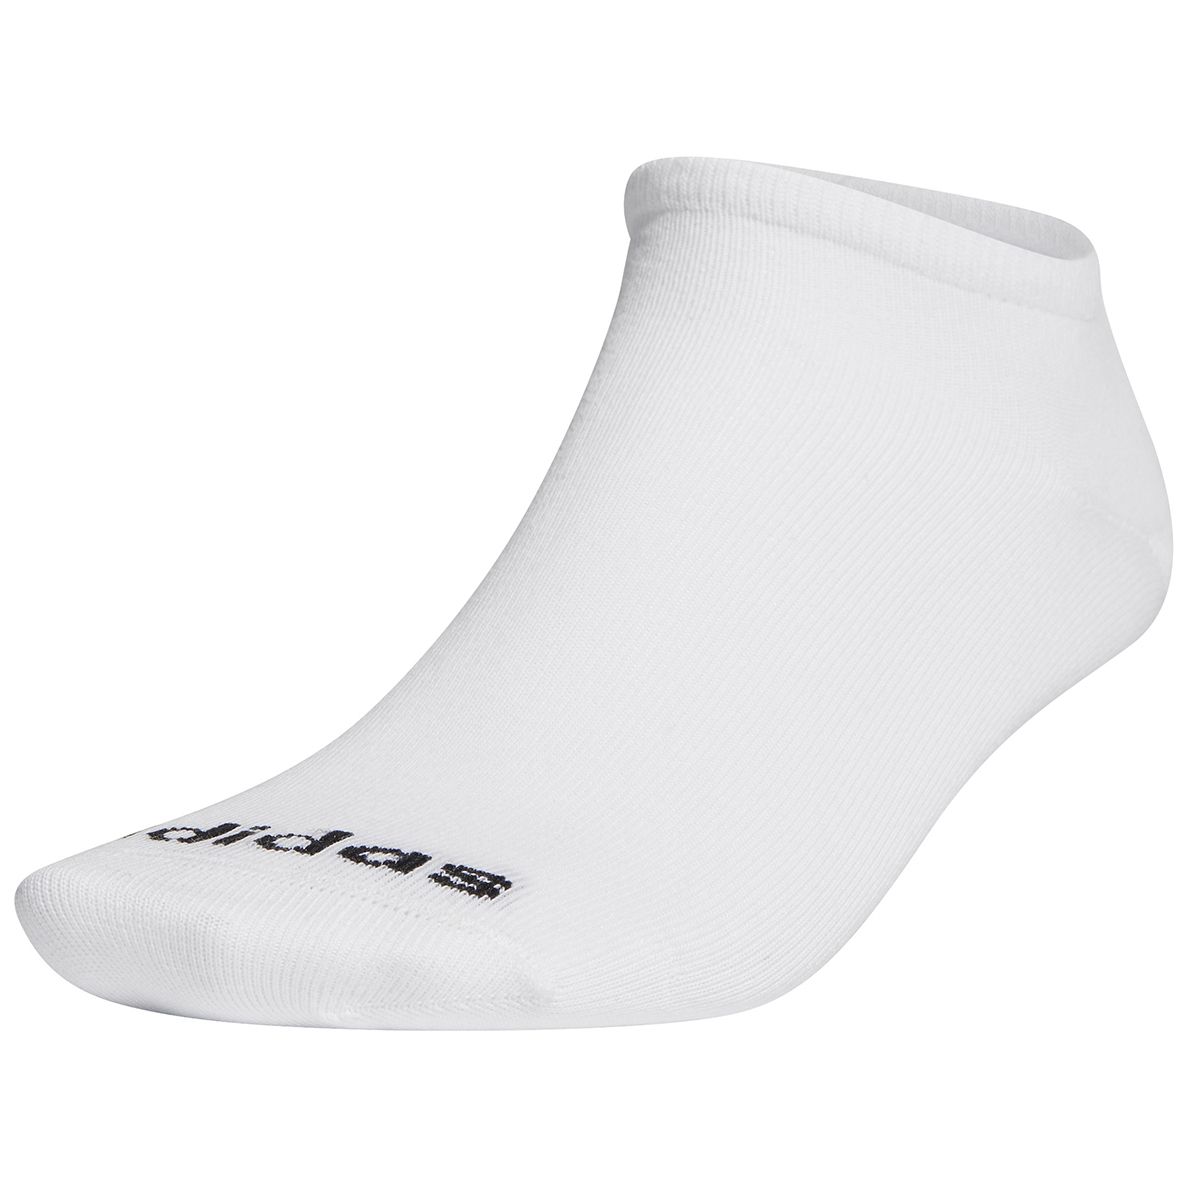 Cotton Tennis Socks Cotton/Polyamide/Elastane White